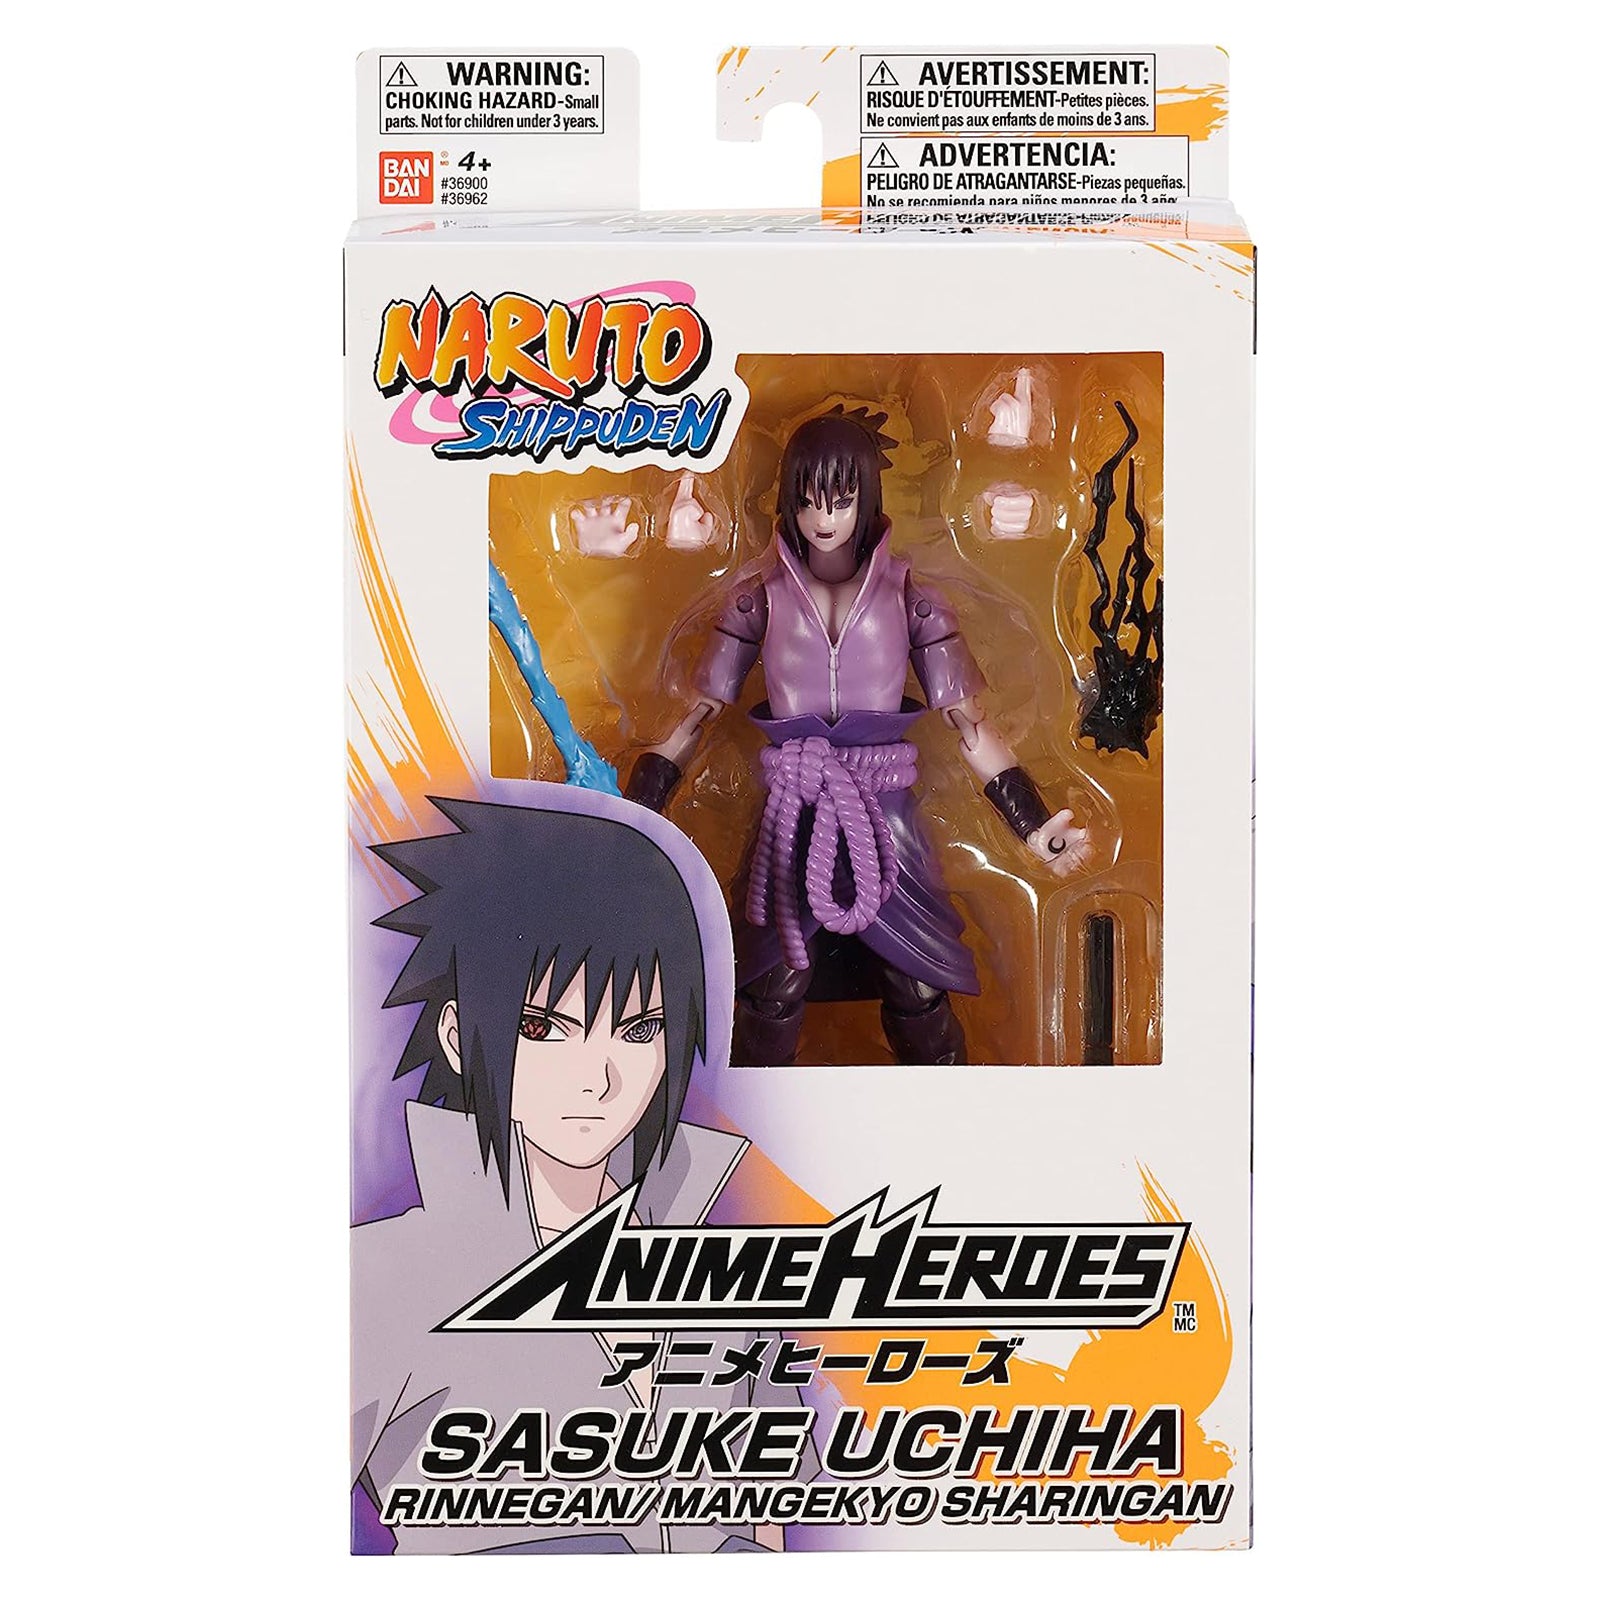 ANIME HEROES - Naruto - Itachi Uchiha Action Figure Vietnam | Ubuy